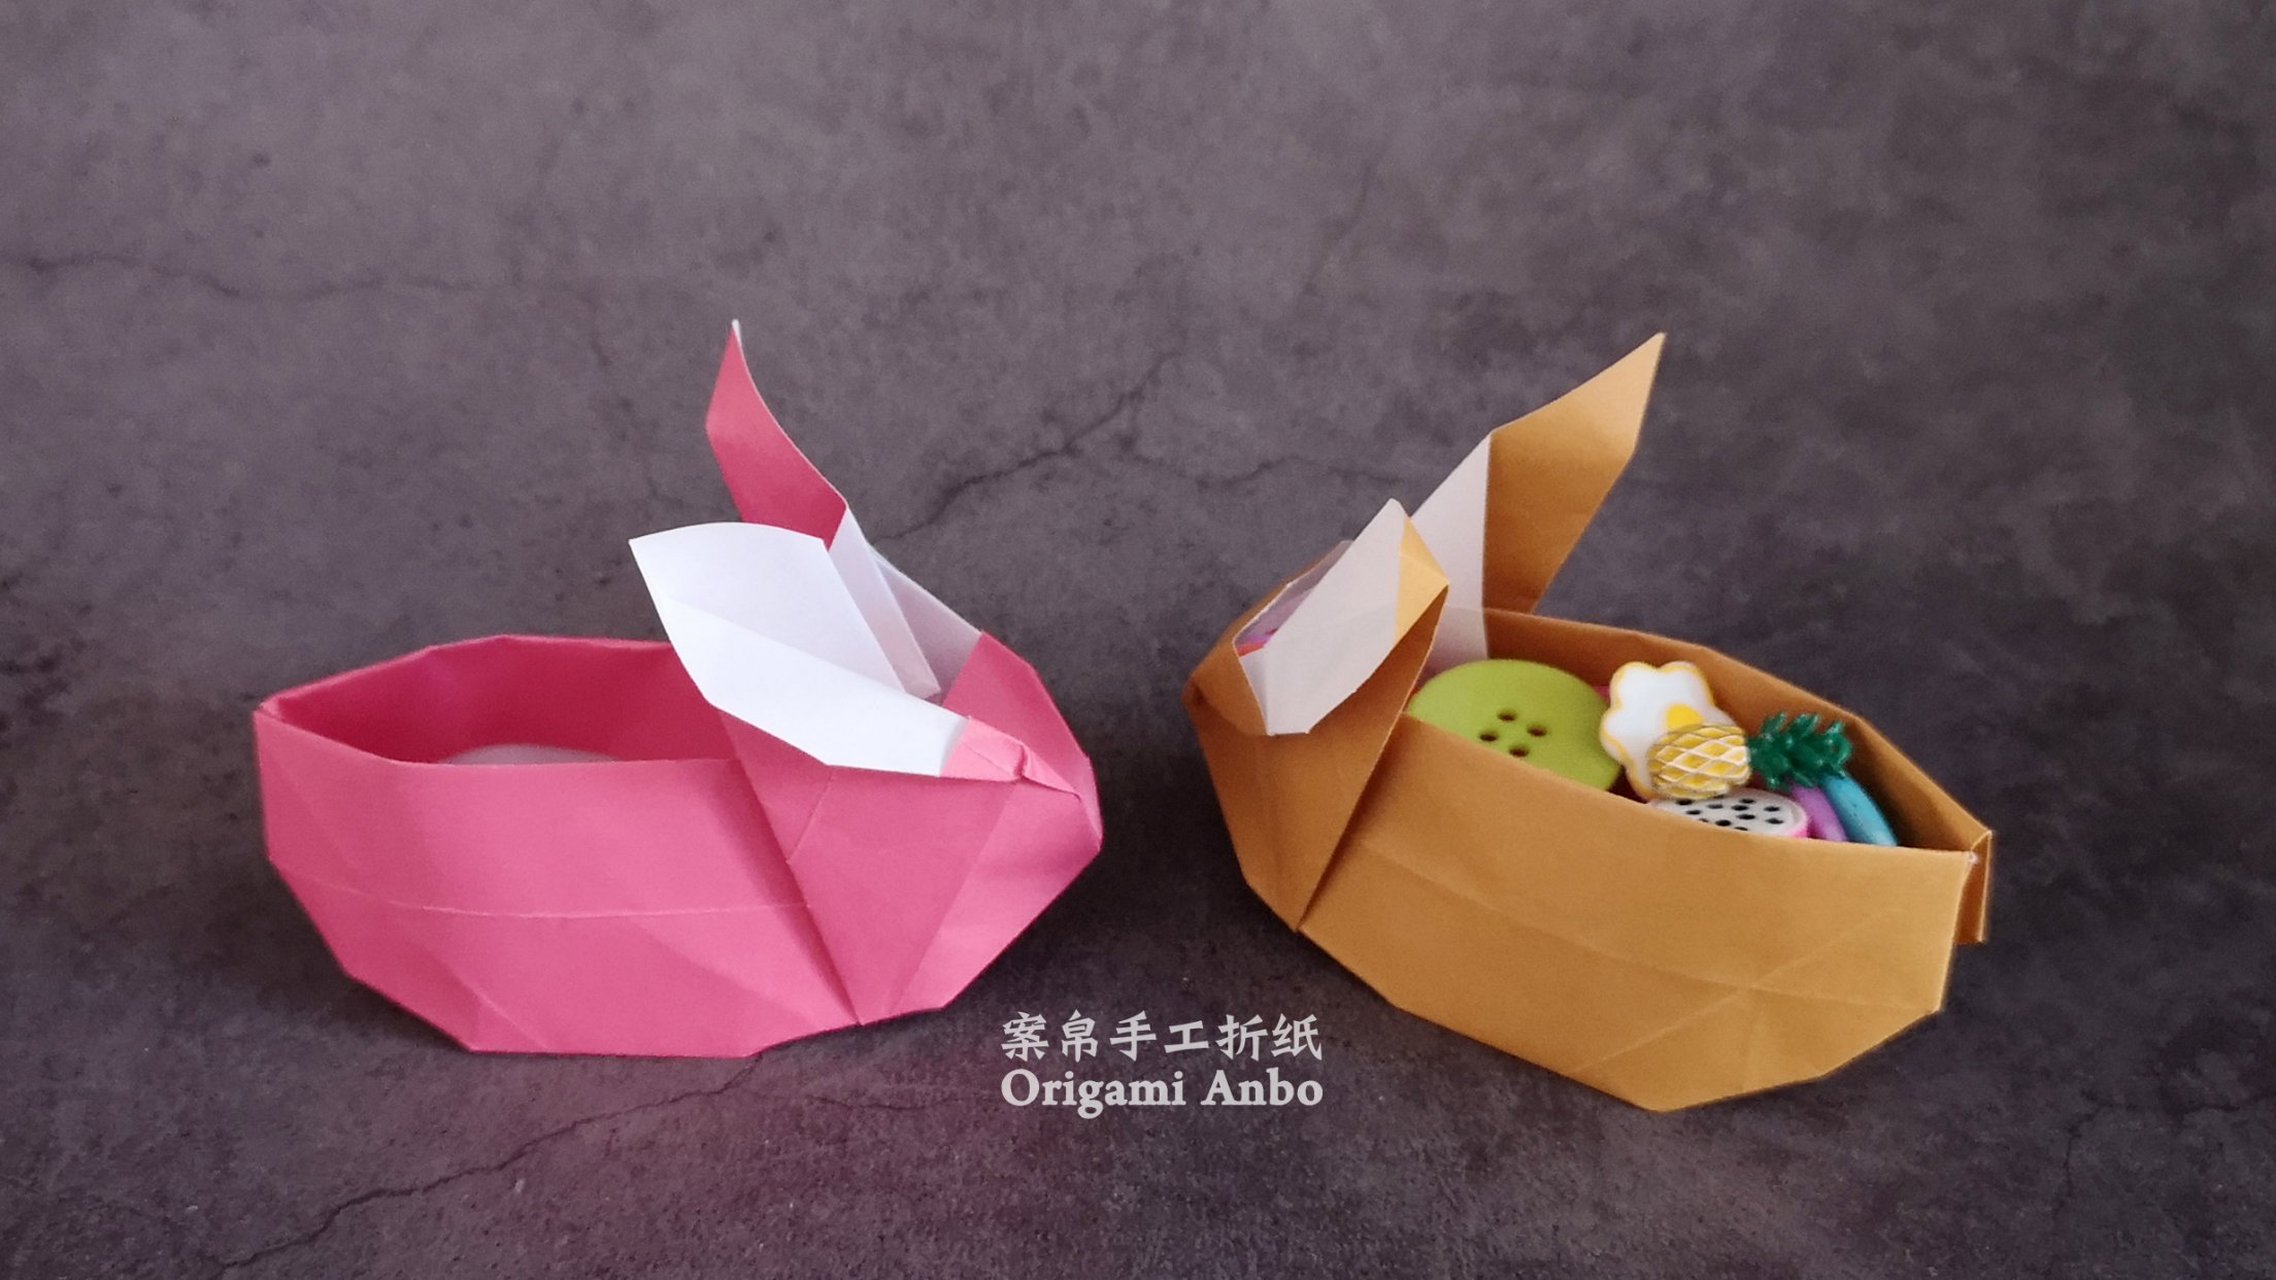 折纸 今天发布了兔子收纳盒折纸教程,快来看看这个可爱的小盒子誓沣